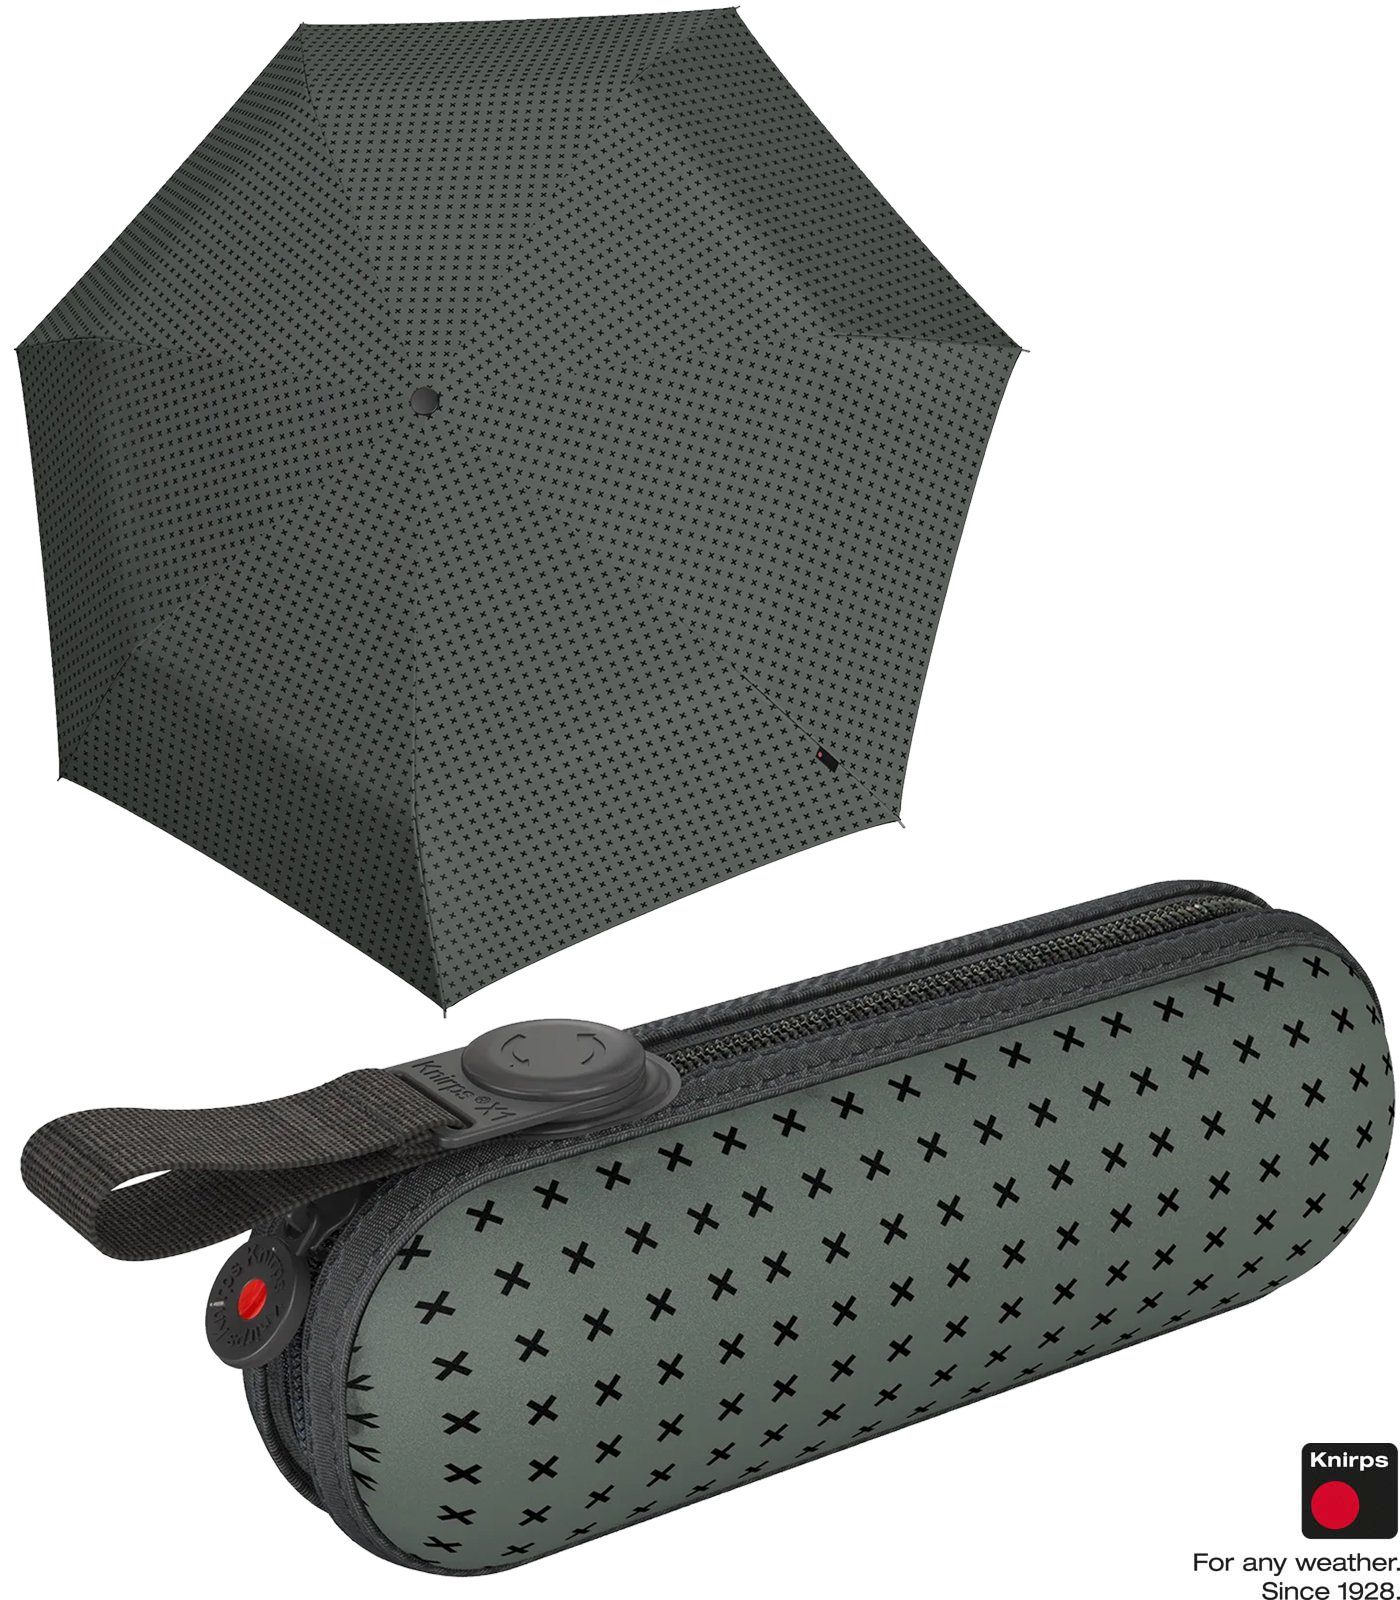 Super Taschenregenschirm Knirps® kompakte X1 grau Begleiter ecorepel-Technologie Mini leichte, - 2Cross, kleine, der mit